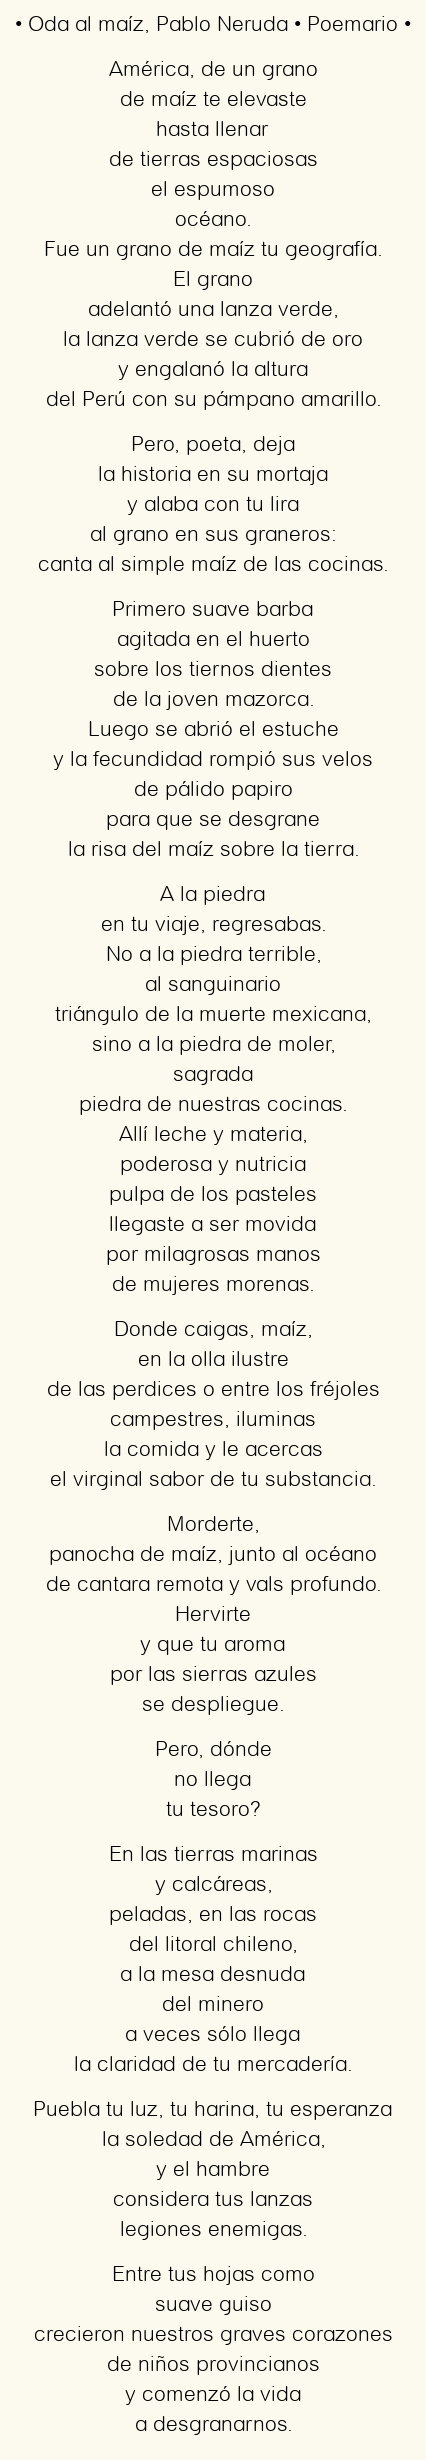 Imagen con el poema Oda al maíz, por Pablo Neruda